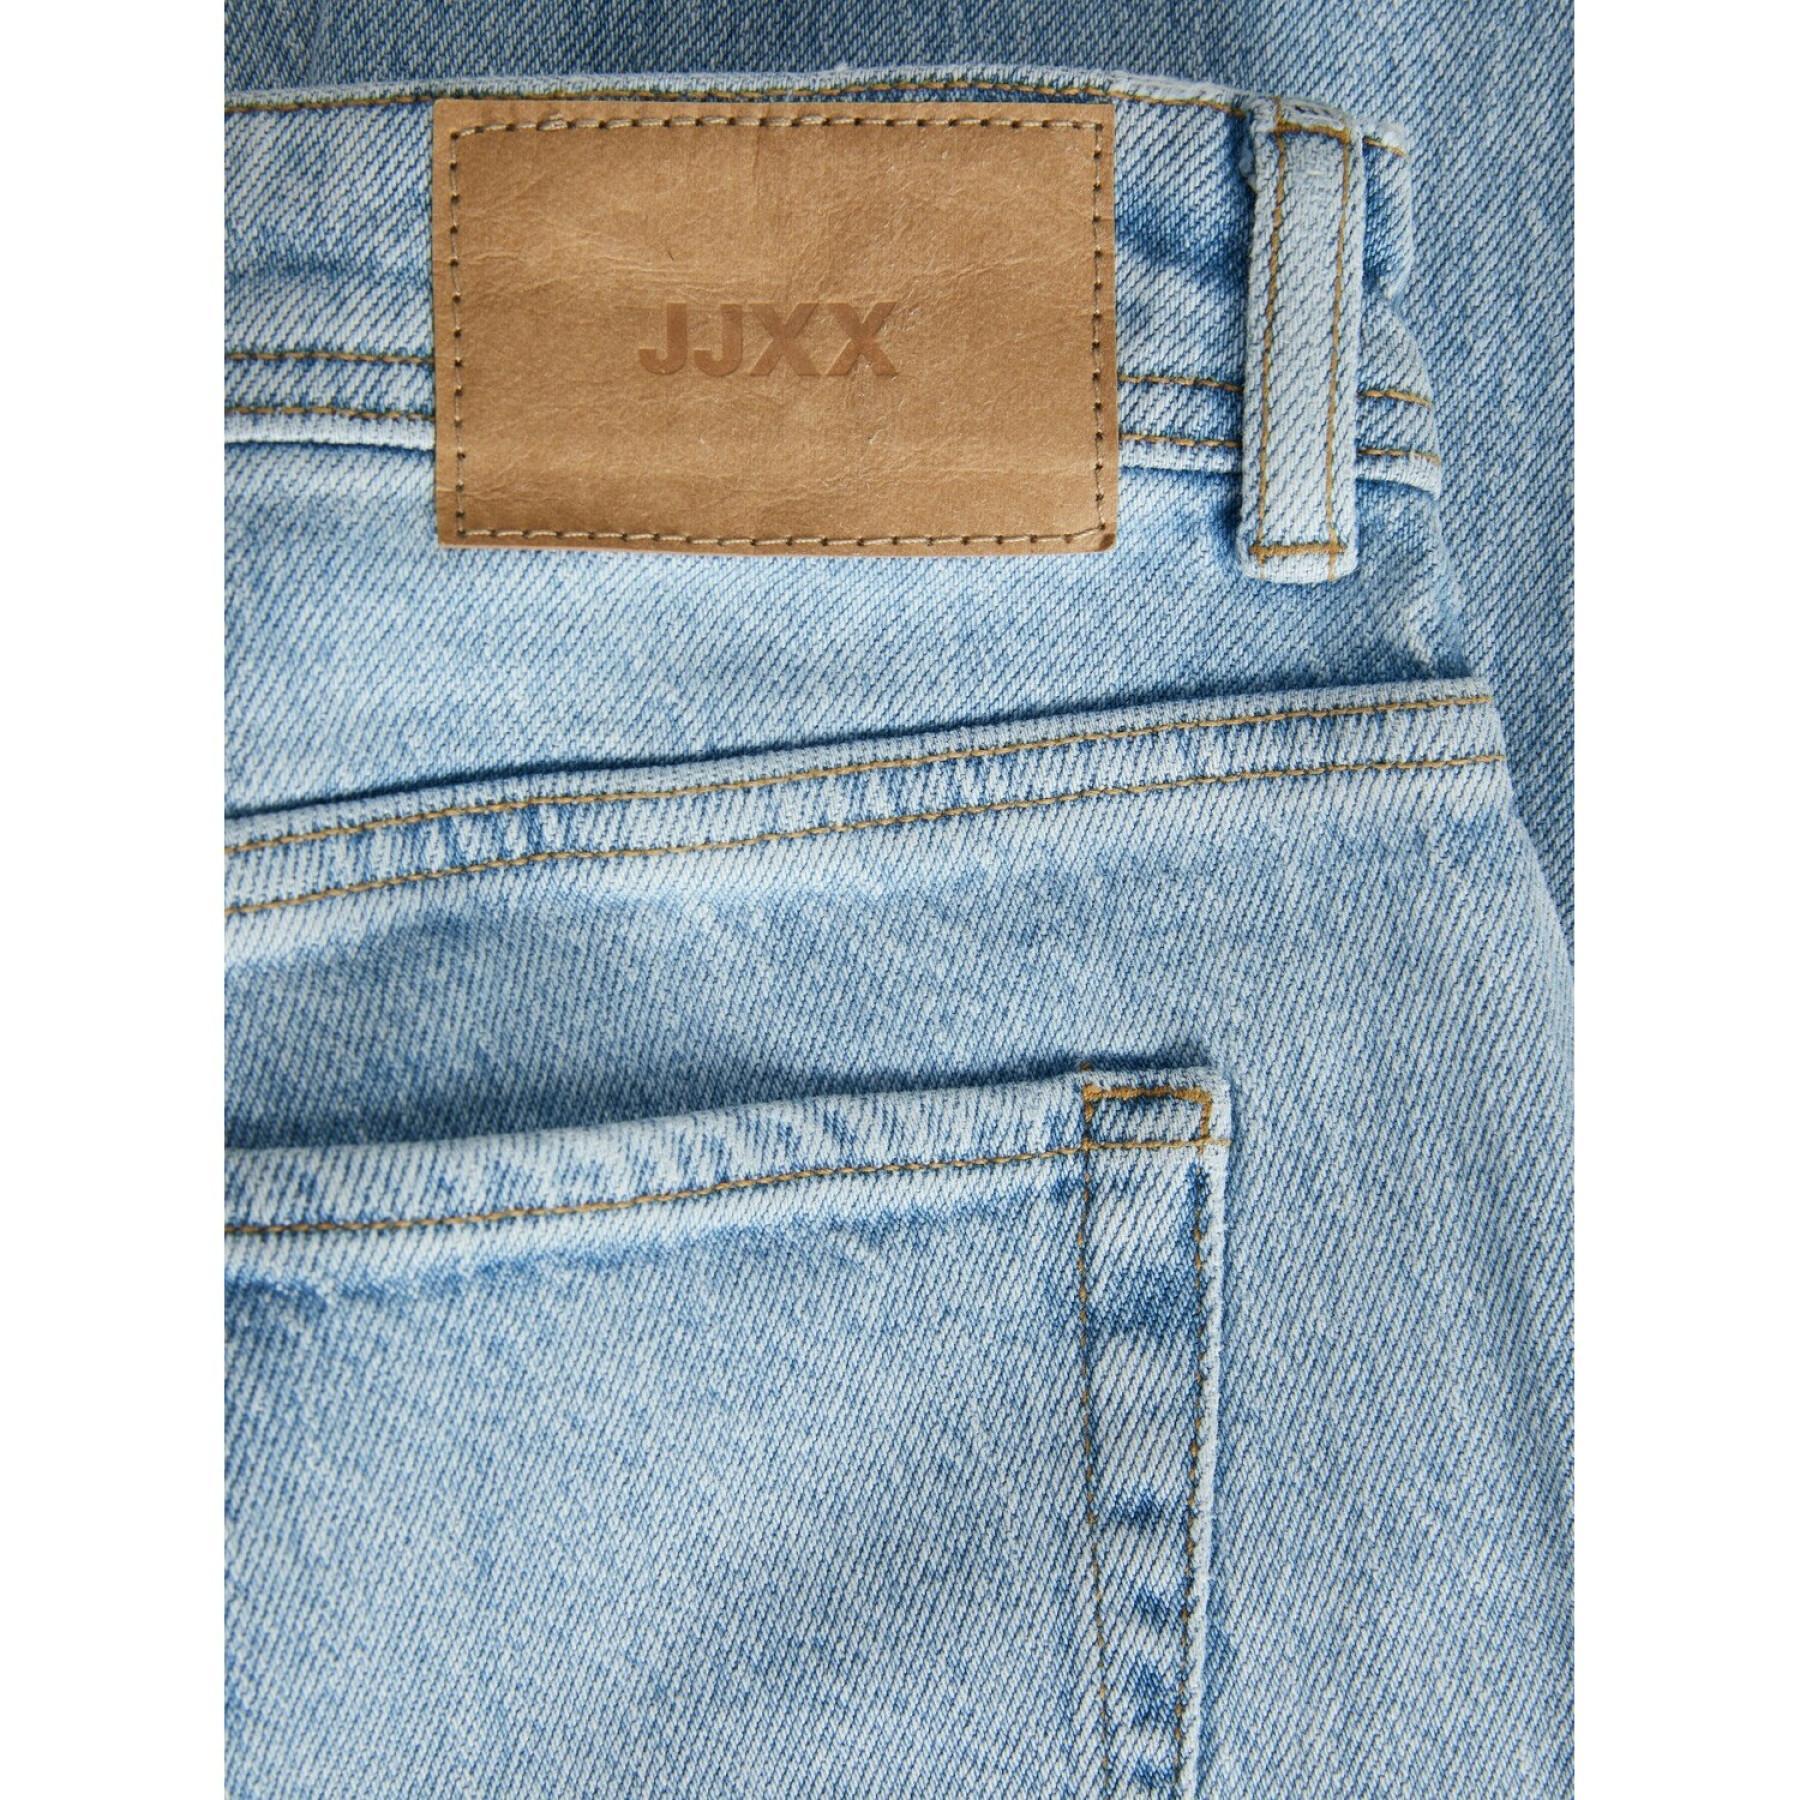 Jeans skinny da donna JJXX berlin nc2004